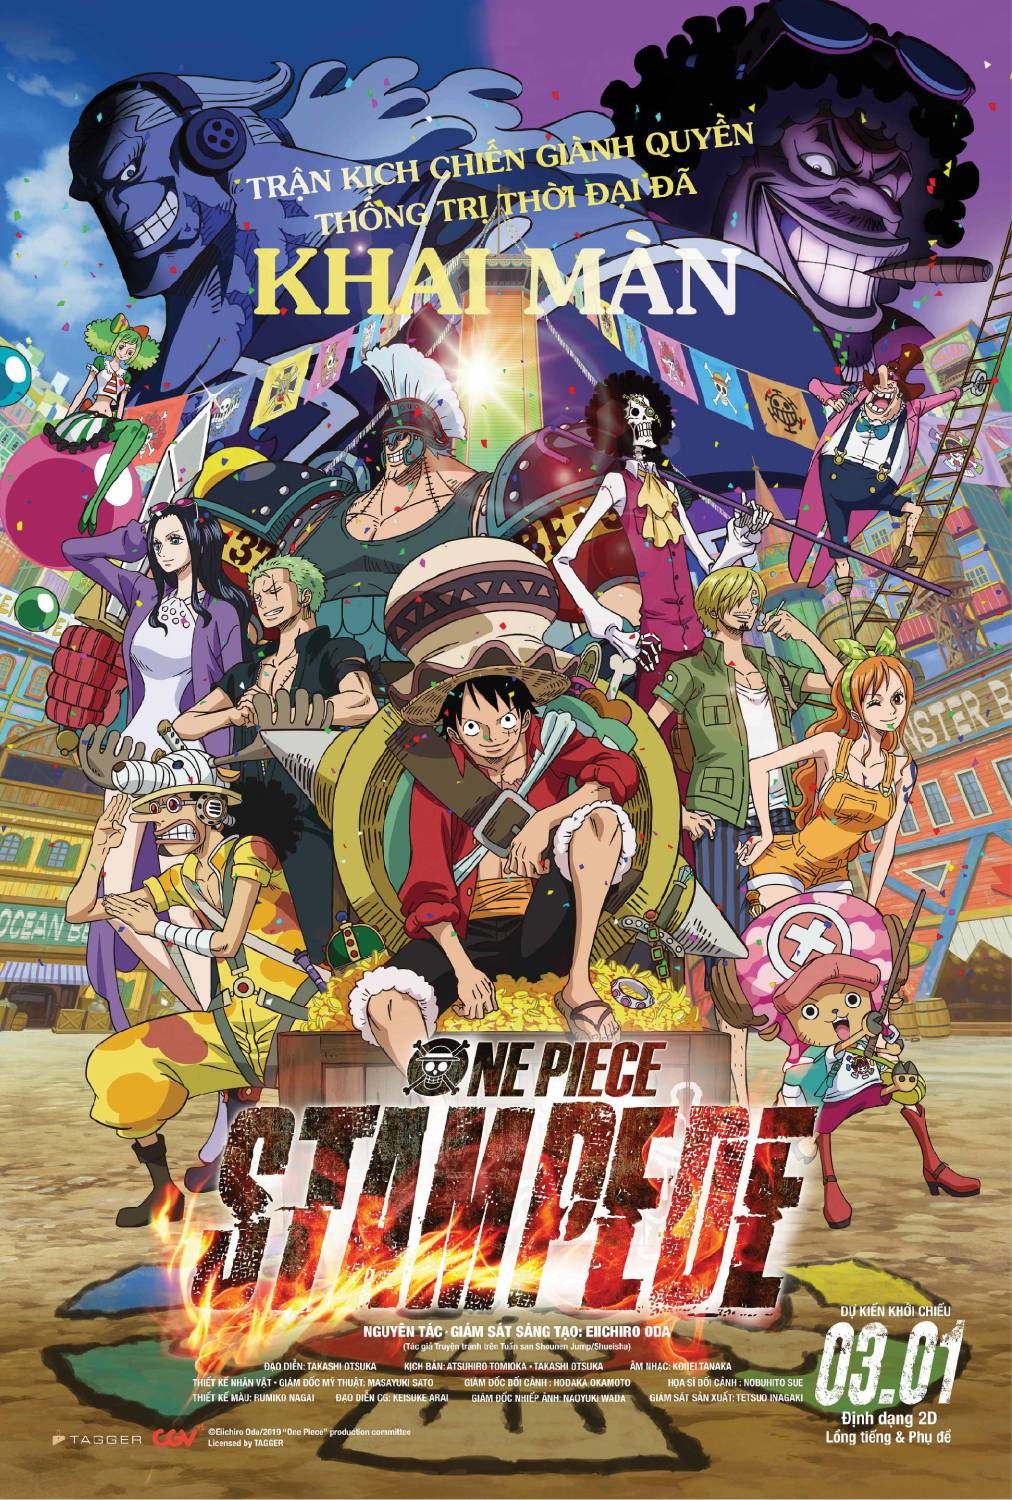 Cẩm nang One Piece mang đến cho bạn những lời khuyên và chi tiết về bộ truyện cổ tích này thế giới. Hình ảnh liên quan đến Cẩm nang One Piece có thể là một con đường dẫn bạn tới việc đọc hoặc xem lại những bộ truyện của One Piece. Chúc bạn tìm thấy những điều hữu ích qua chúng tôi.